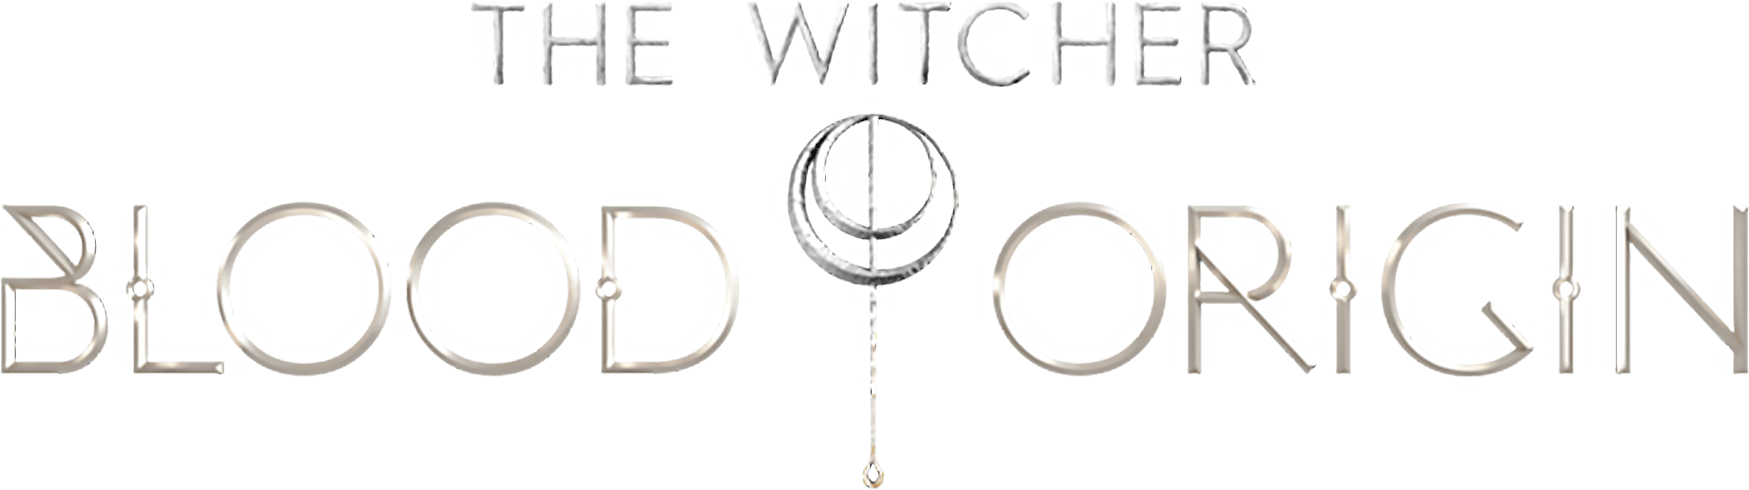 The Witcher: Blood Origin logo